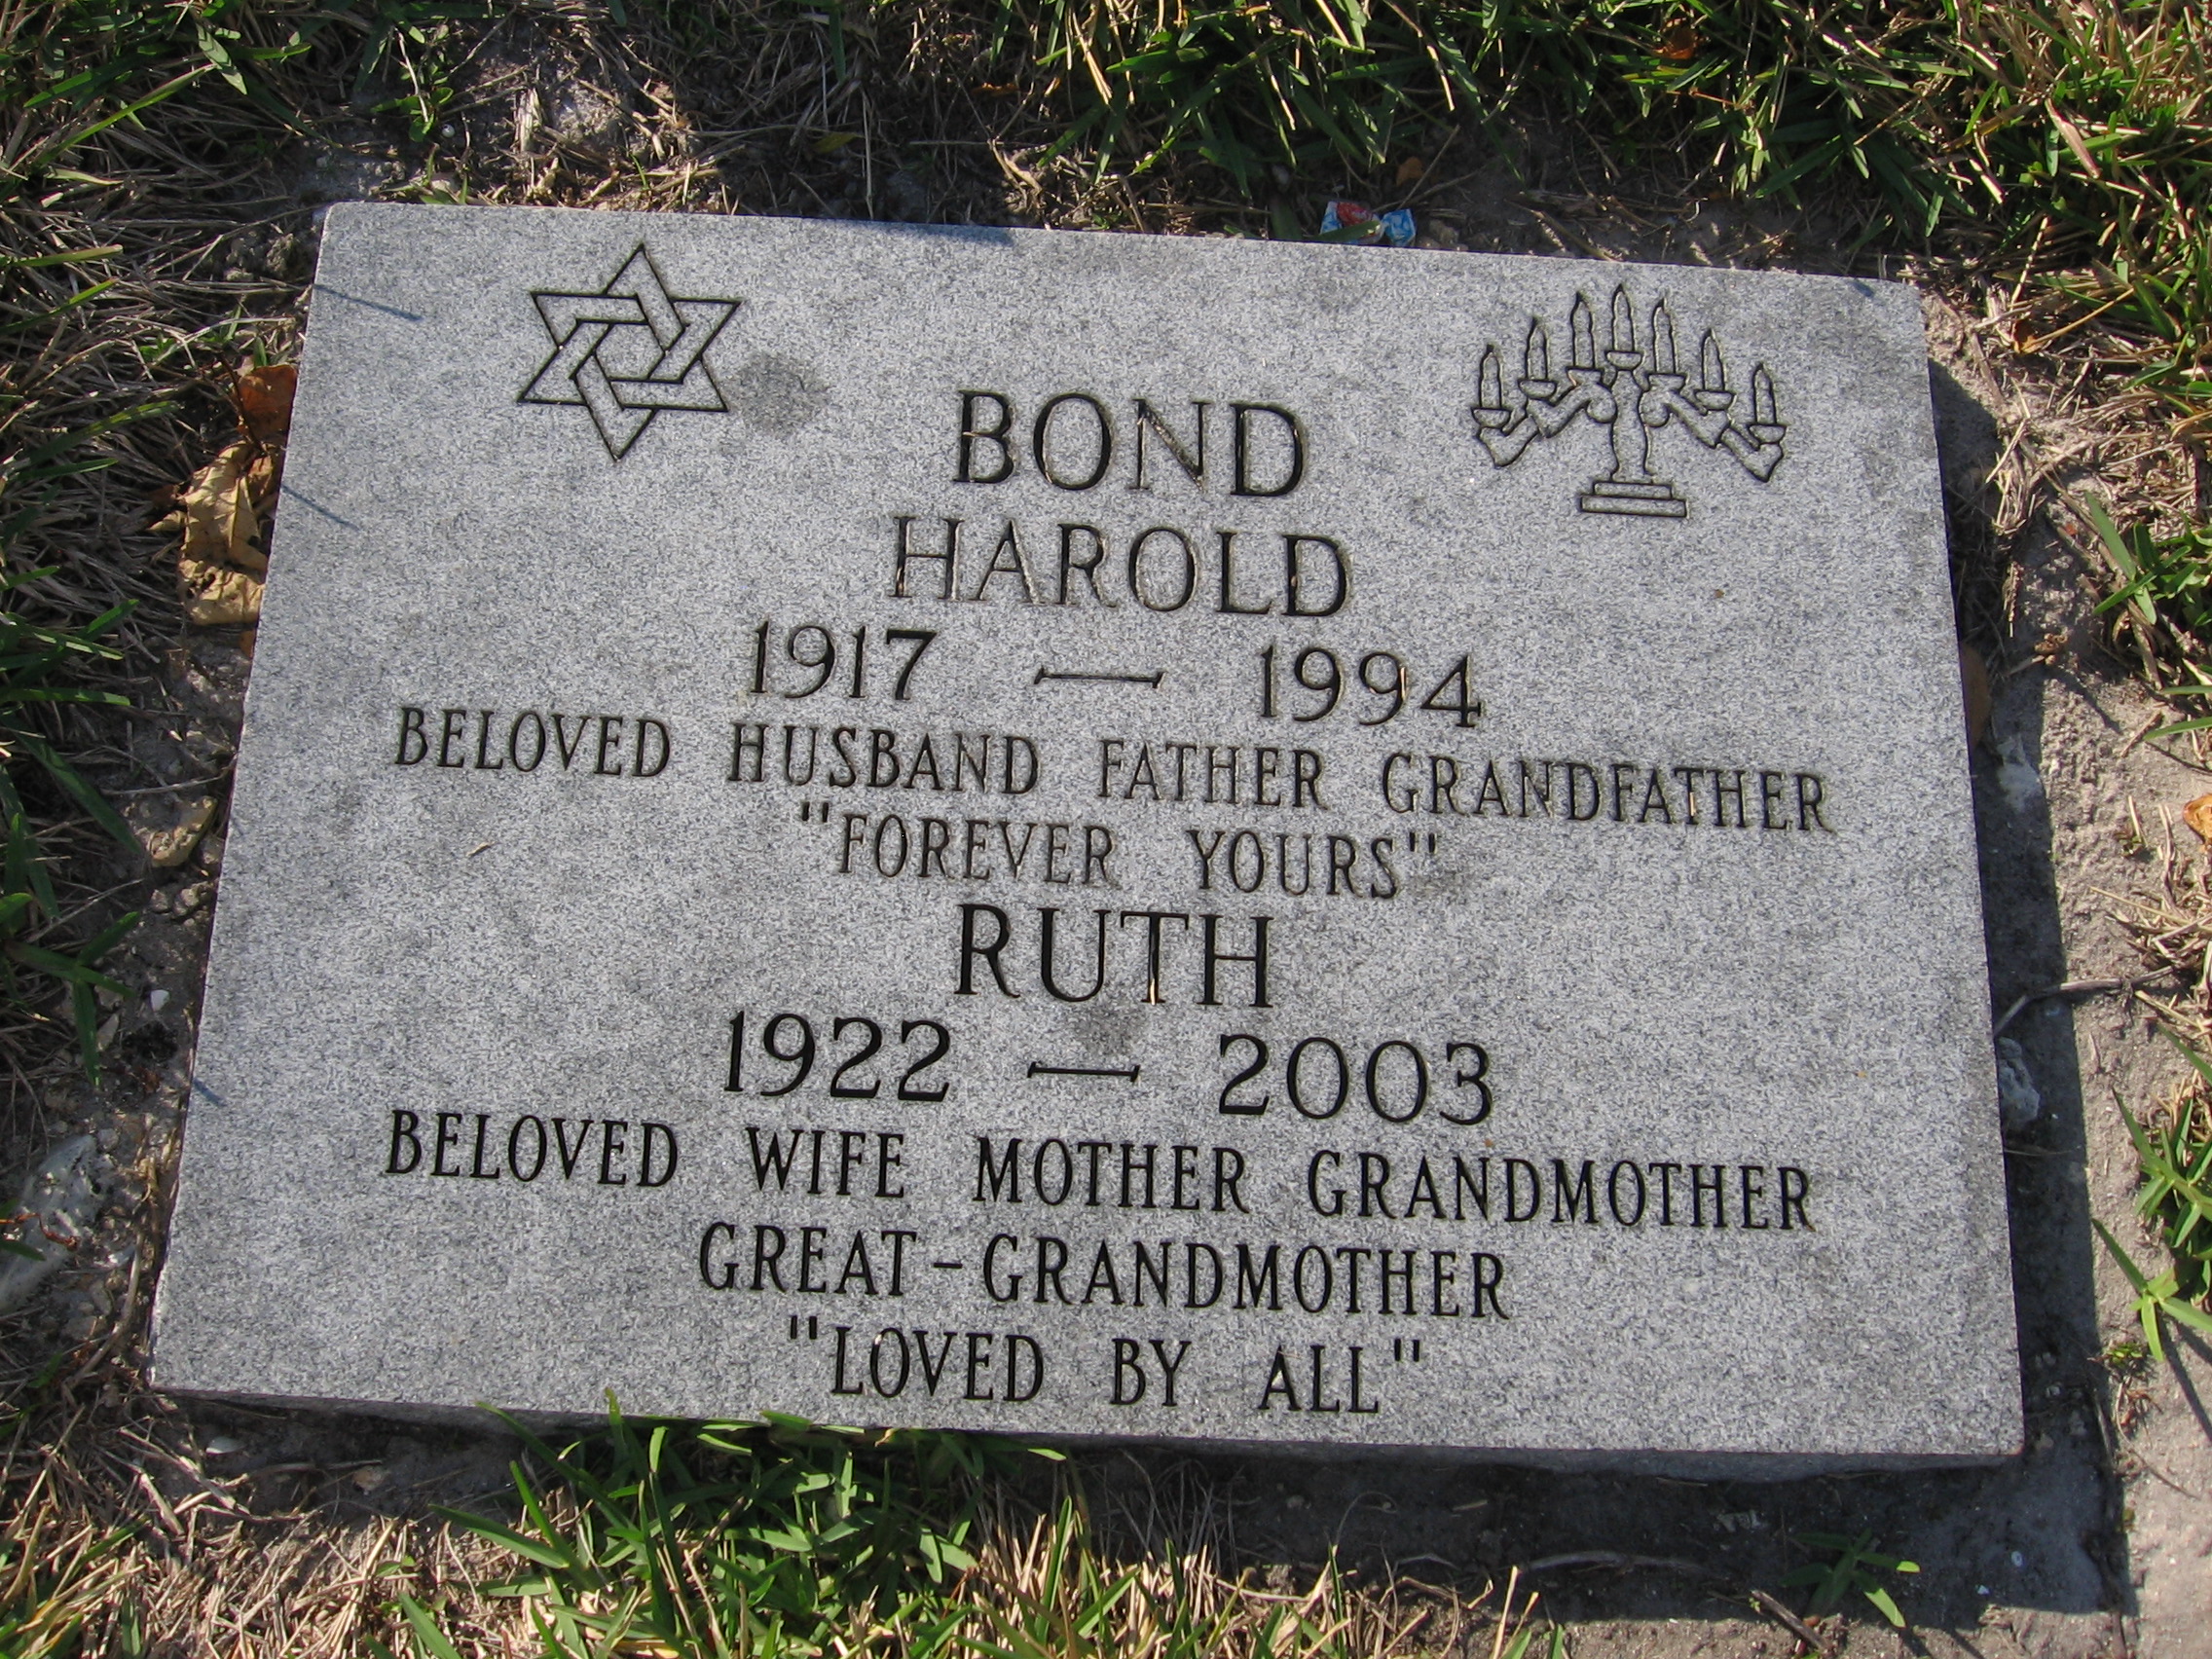 Harold Bond